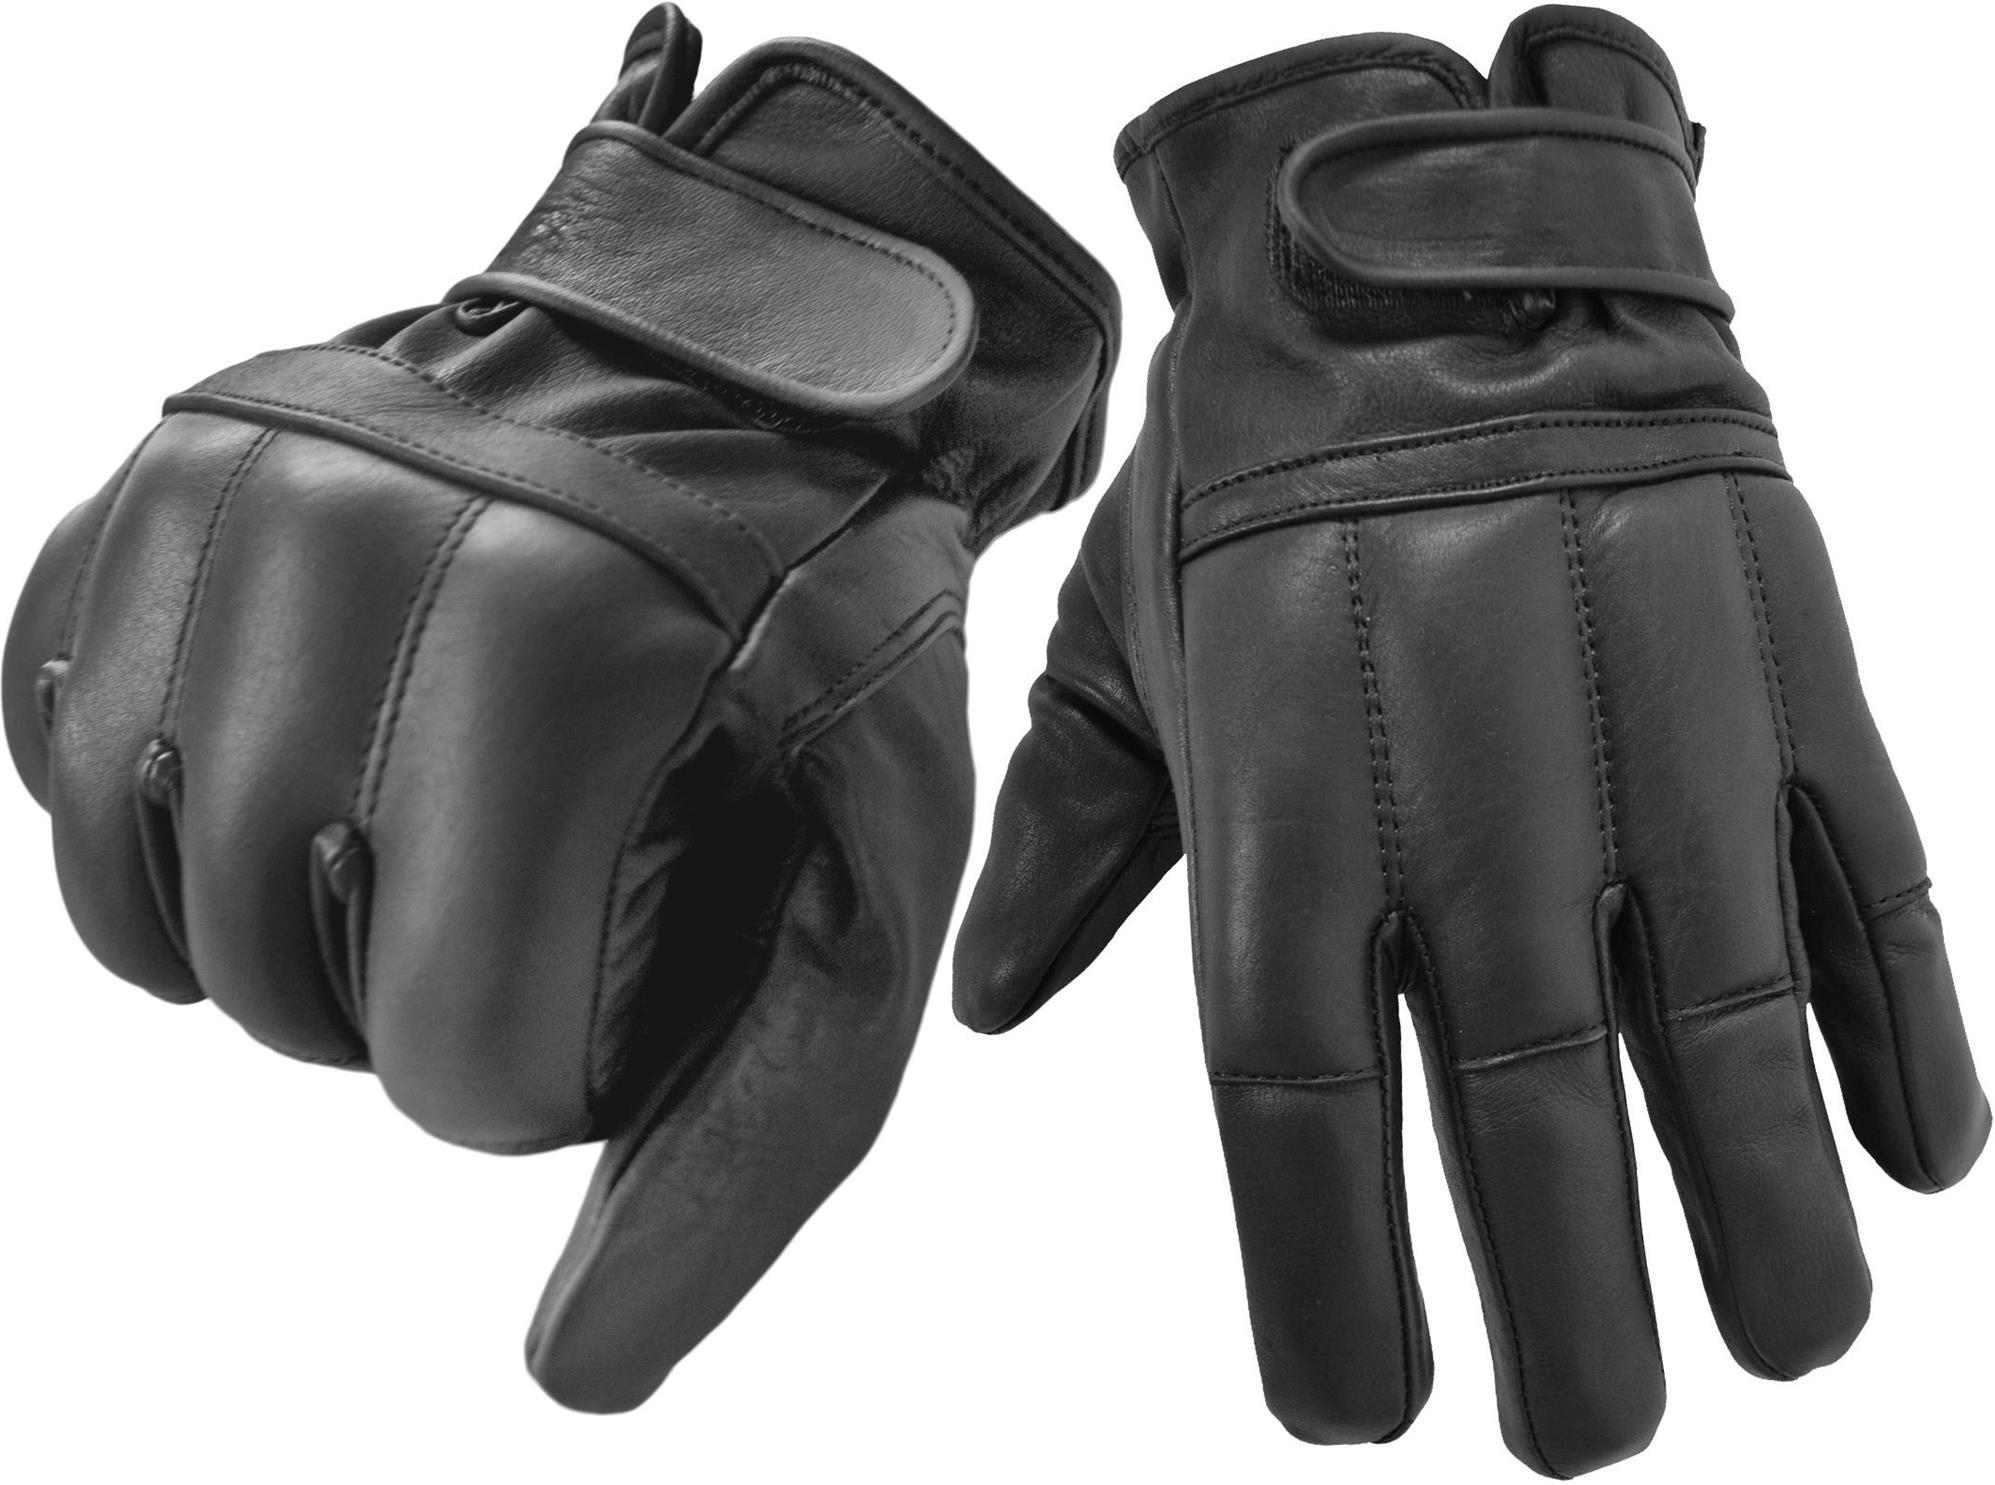 Security-Handschuhe Lederhandschuhe mit Quarzsandfüllung schwarz 